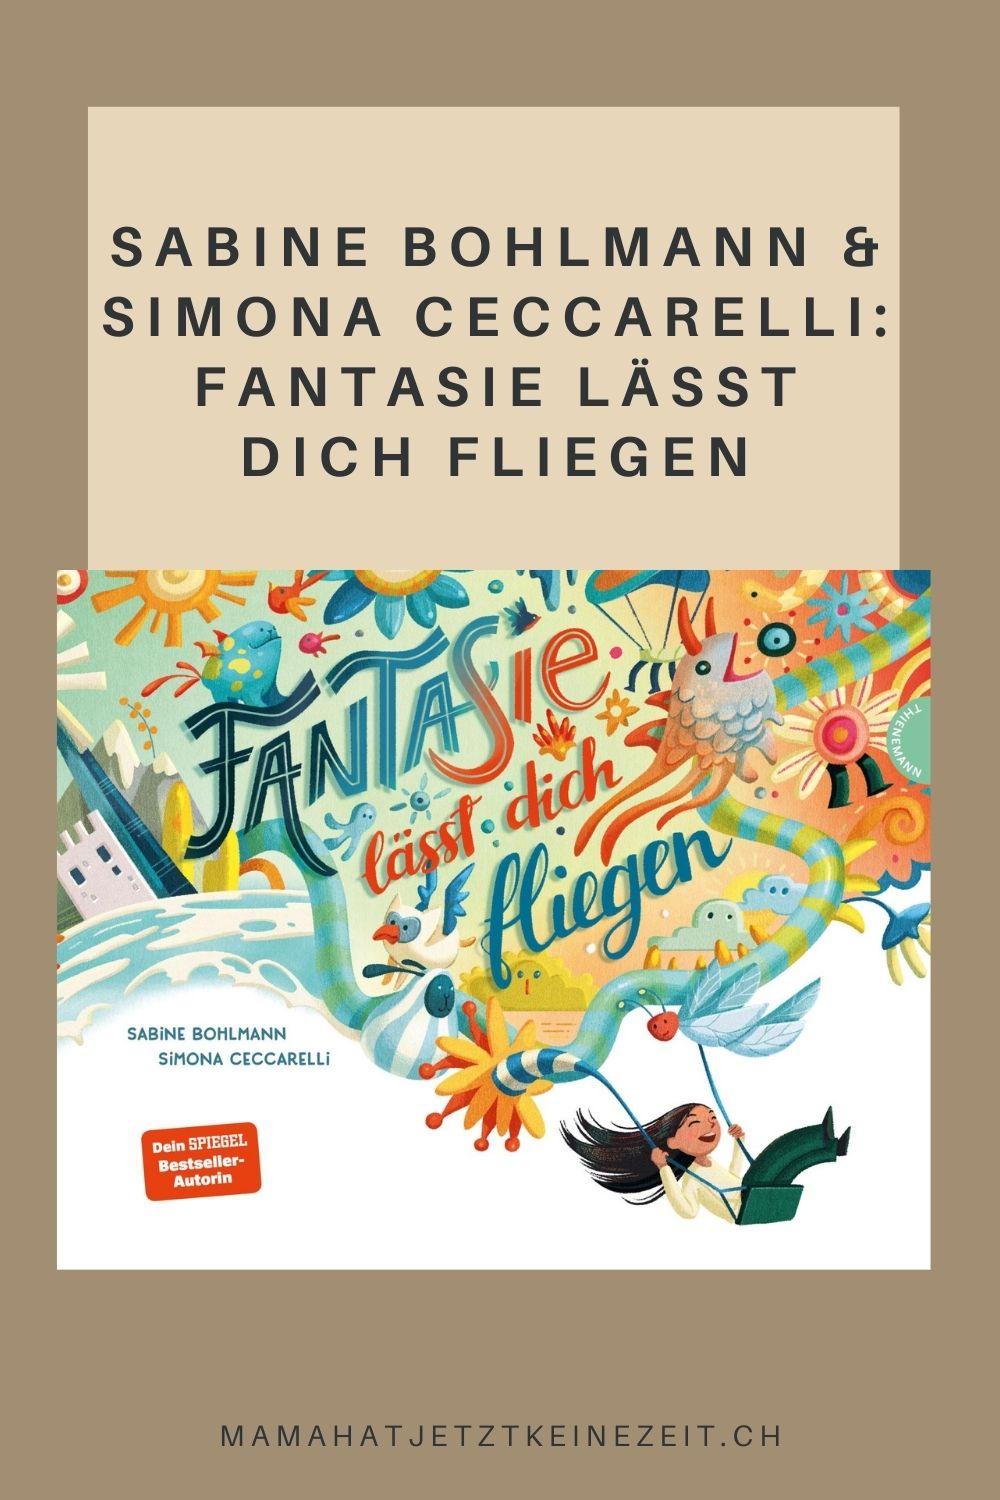 Sabine Bohlmann und Simona Ceccarelli: "Fantasie lässt dich fliegen"